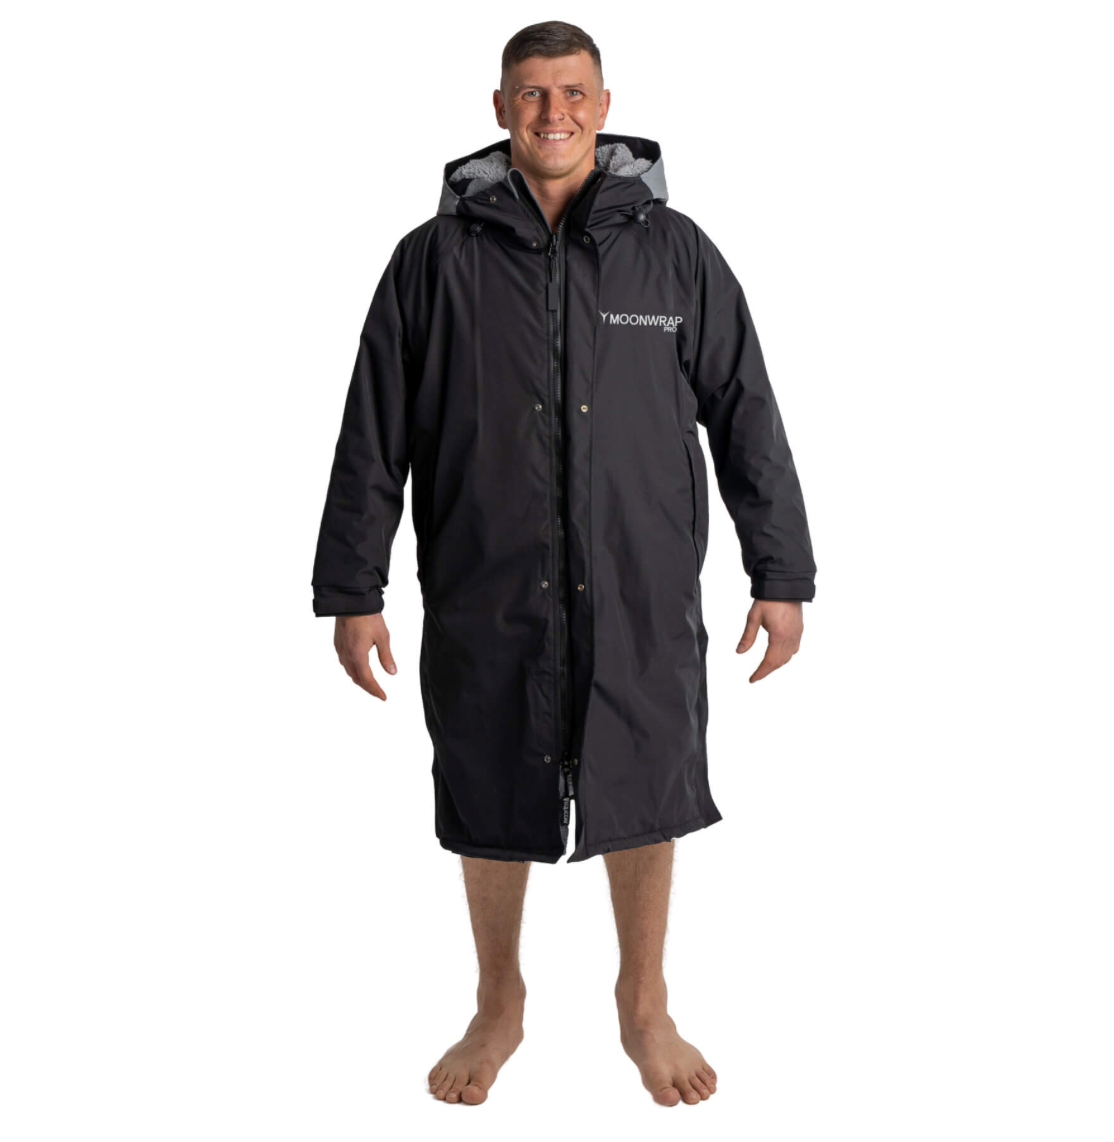 Frostfire - Moonwrap Pro Long Sleeve Waterproof Changing Robe Black